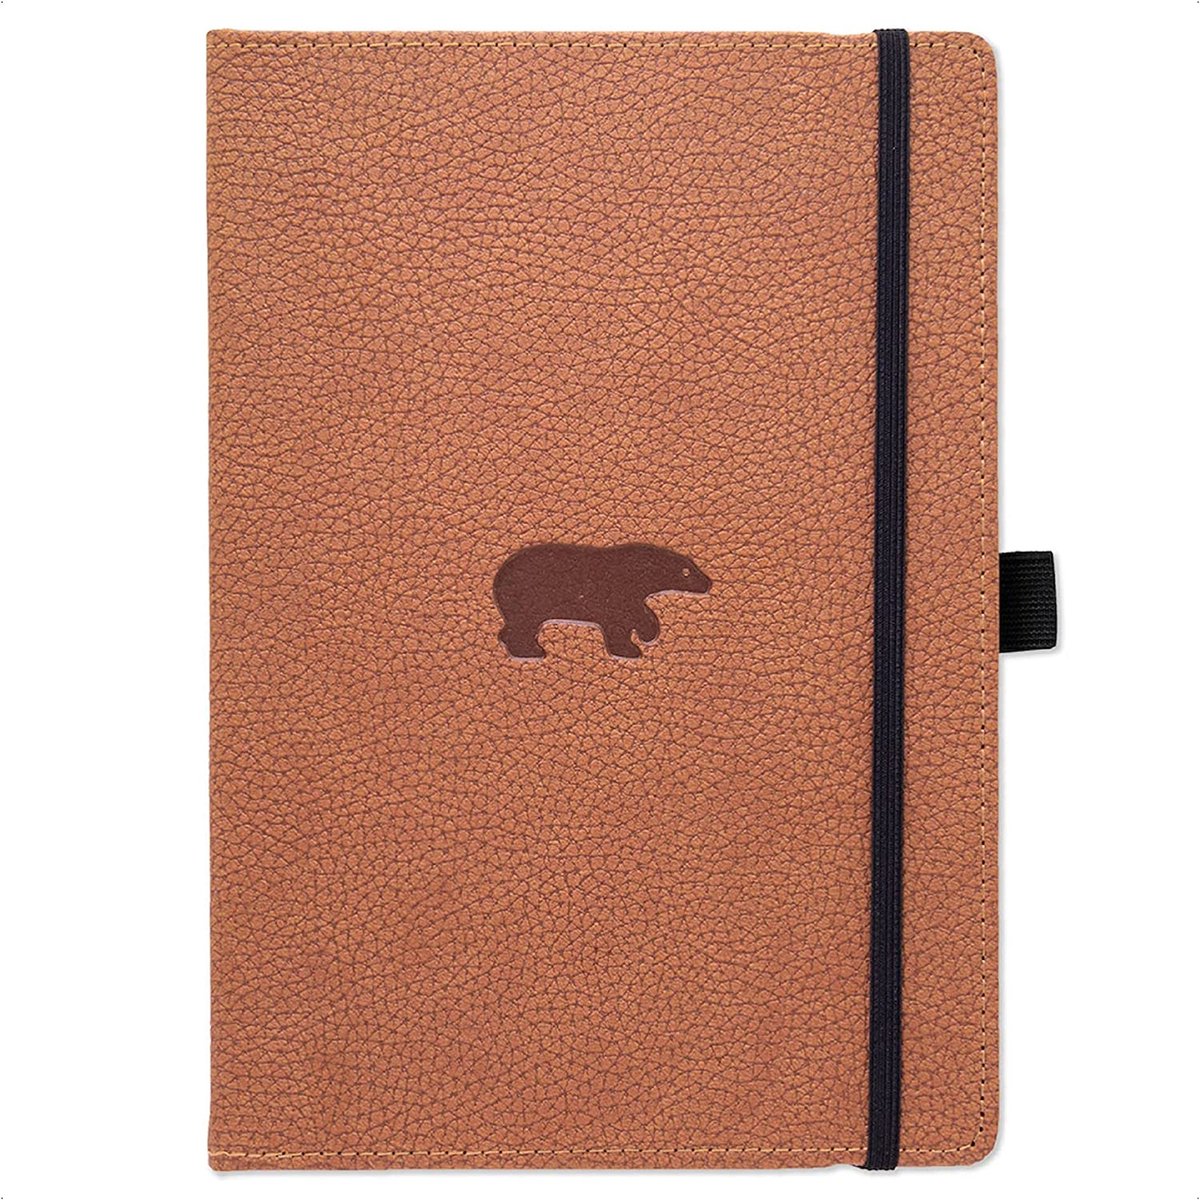 Dingbats* Wildlife A5 Notitieboek - Brown Bear Blanco - Bullet Journal met 100 gsm Inktvrij Papier - Schetsboek met Harde Kaft, Binnenvak, Elastische Sluiting en Bladwijzer